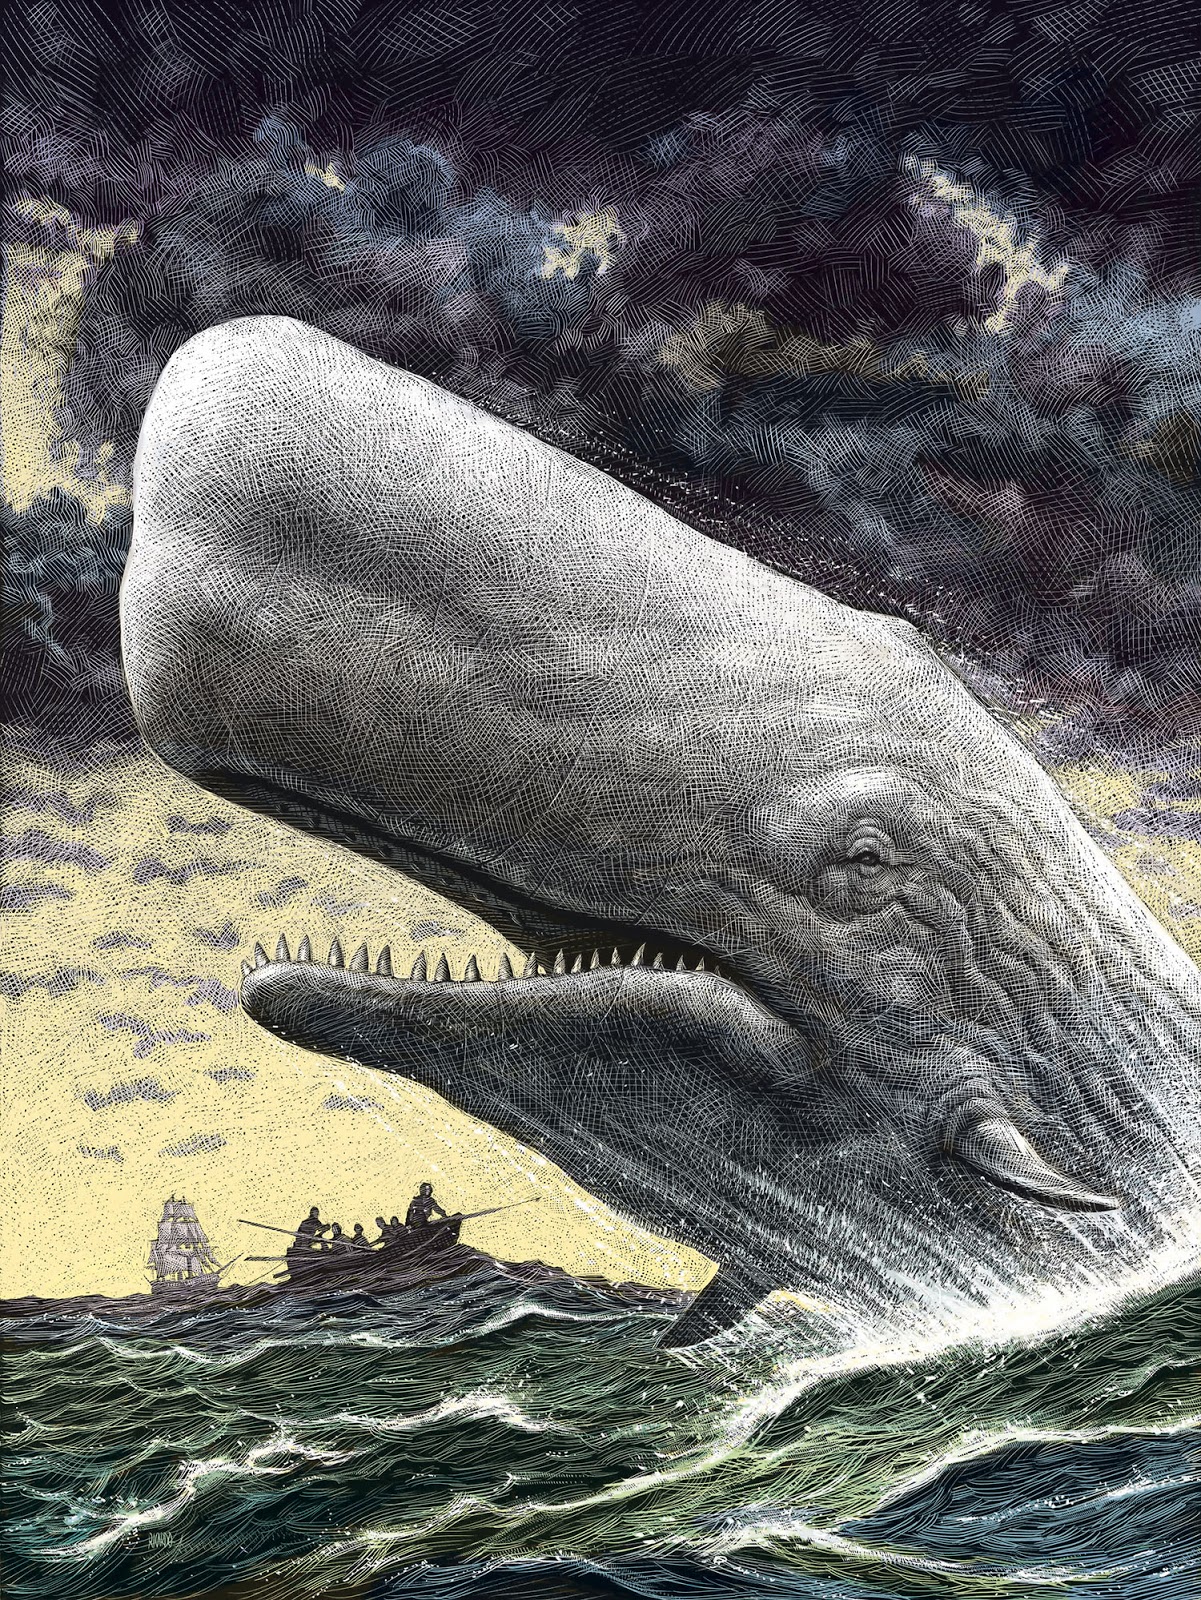 Moby Dick, balena ucigașă, a existat cu adevărat